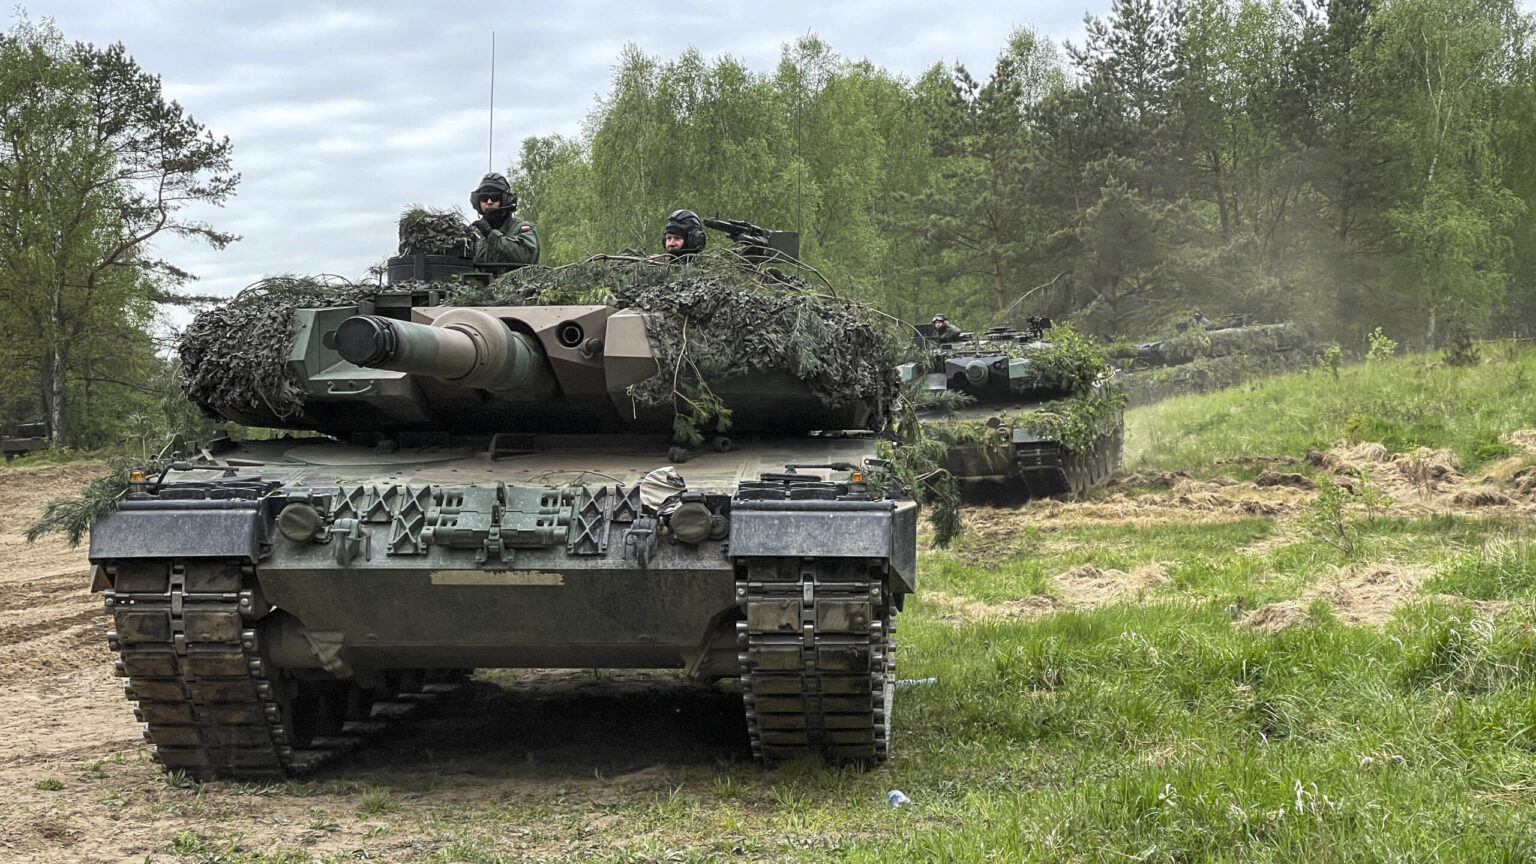 Φινλανδία: Θα αποστείλει στην Ουκρανία τρία άρματα μάχης Leopard 2 διαμορφωμένα για εκκαθάριση ναρκοπεδίων